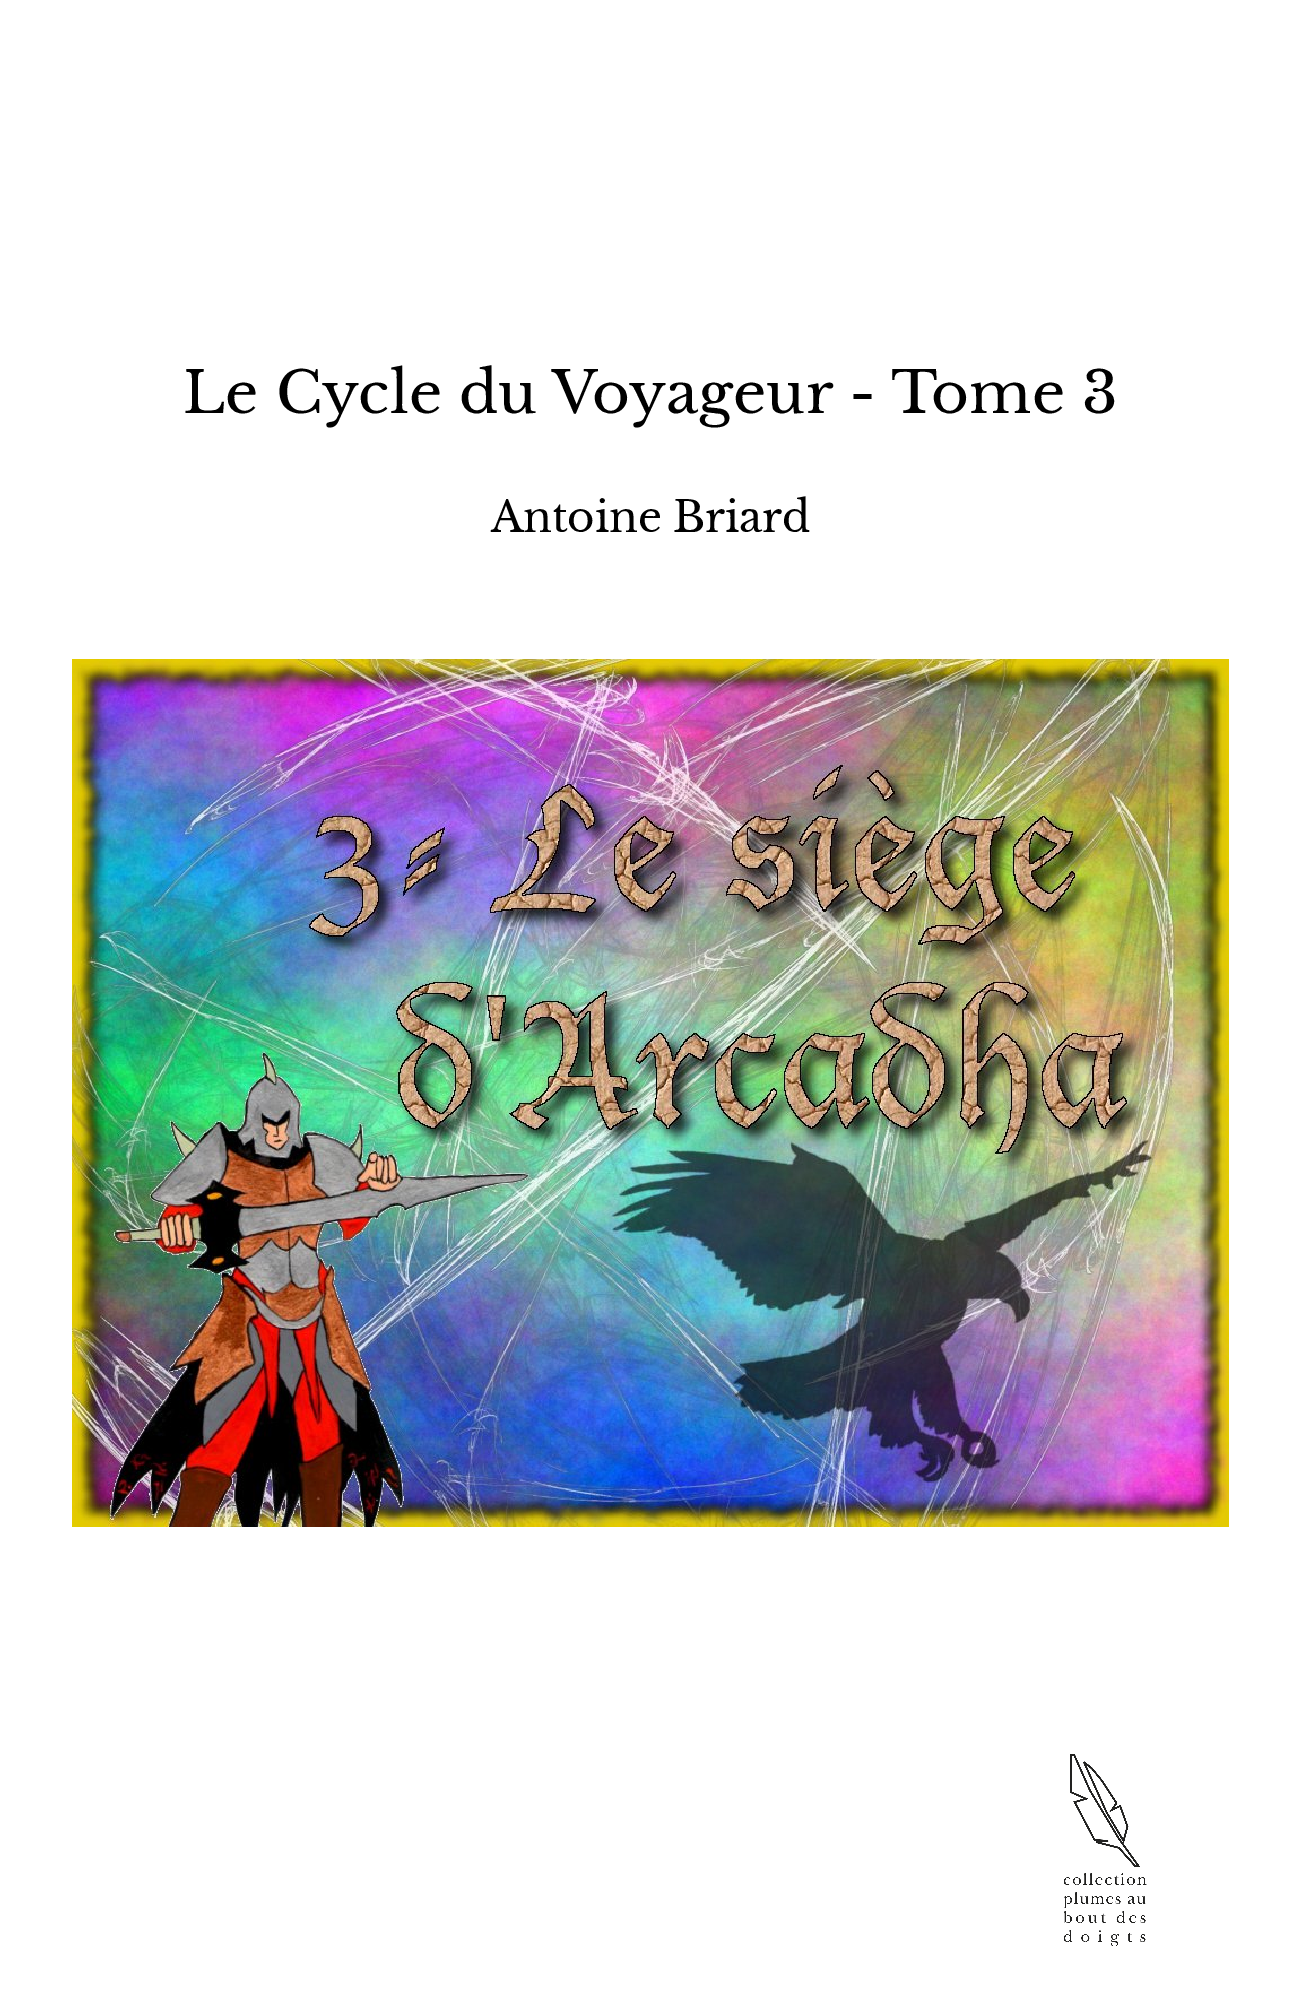 Le Cycle du Voyageur - Tome 3